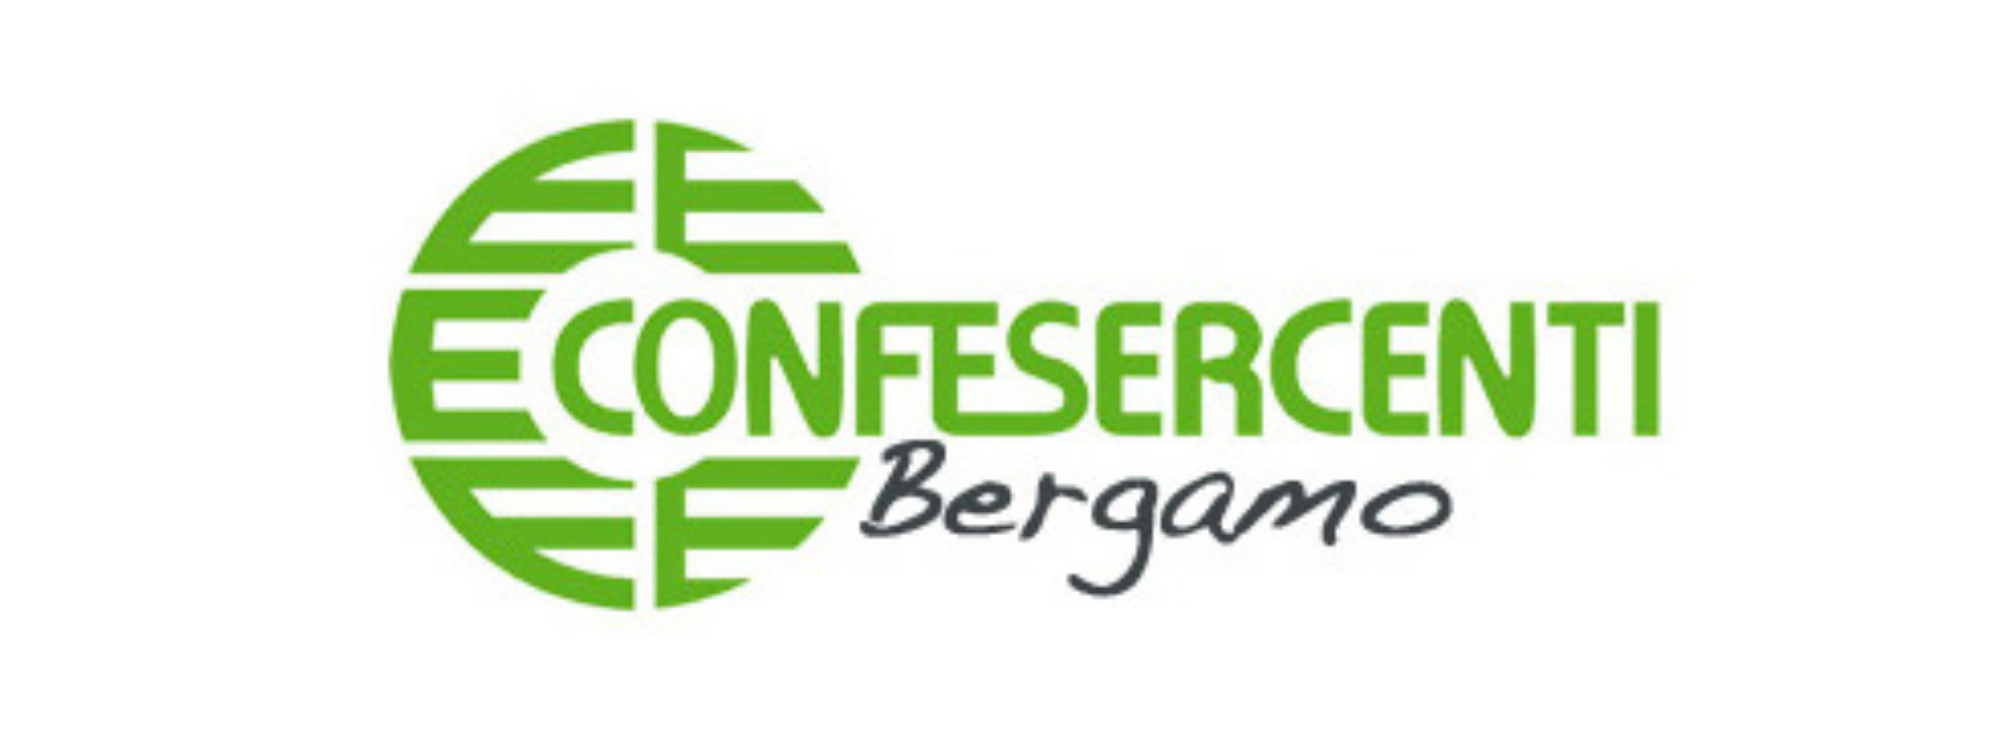 Confesercenti Bergamo